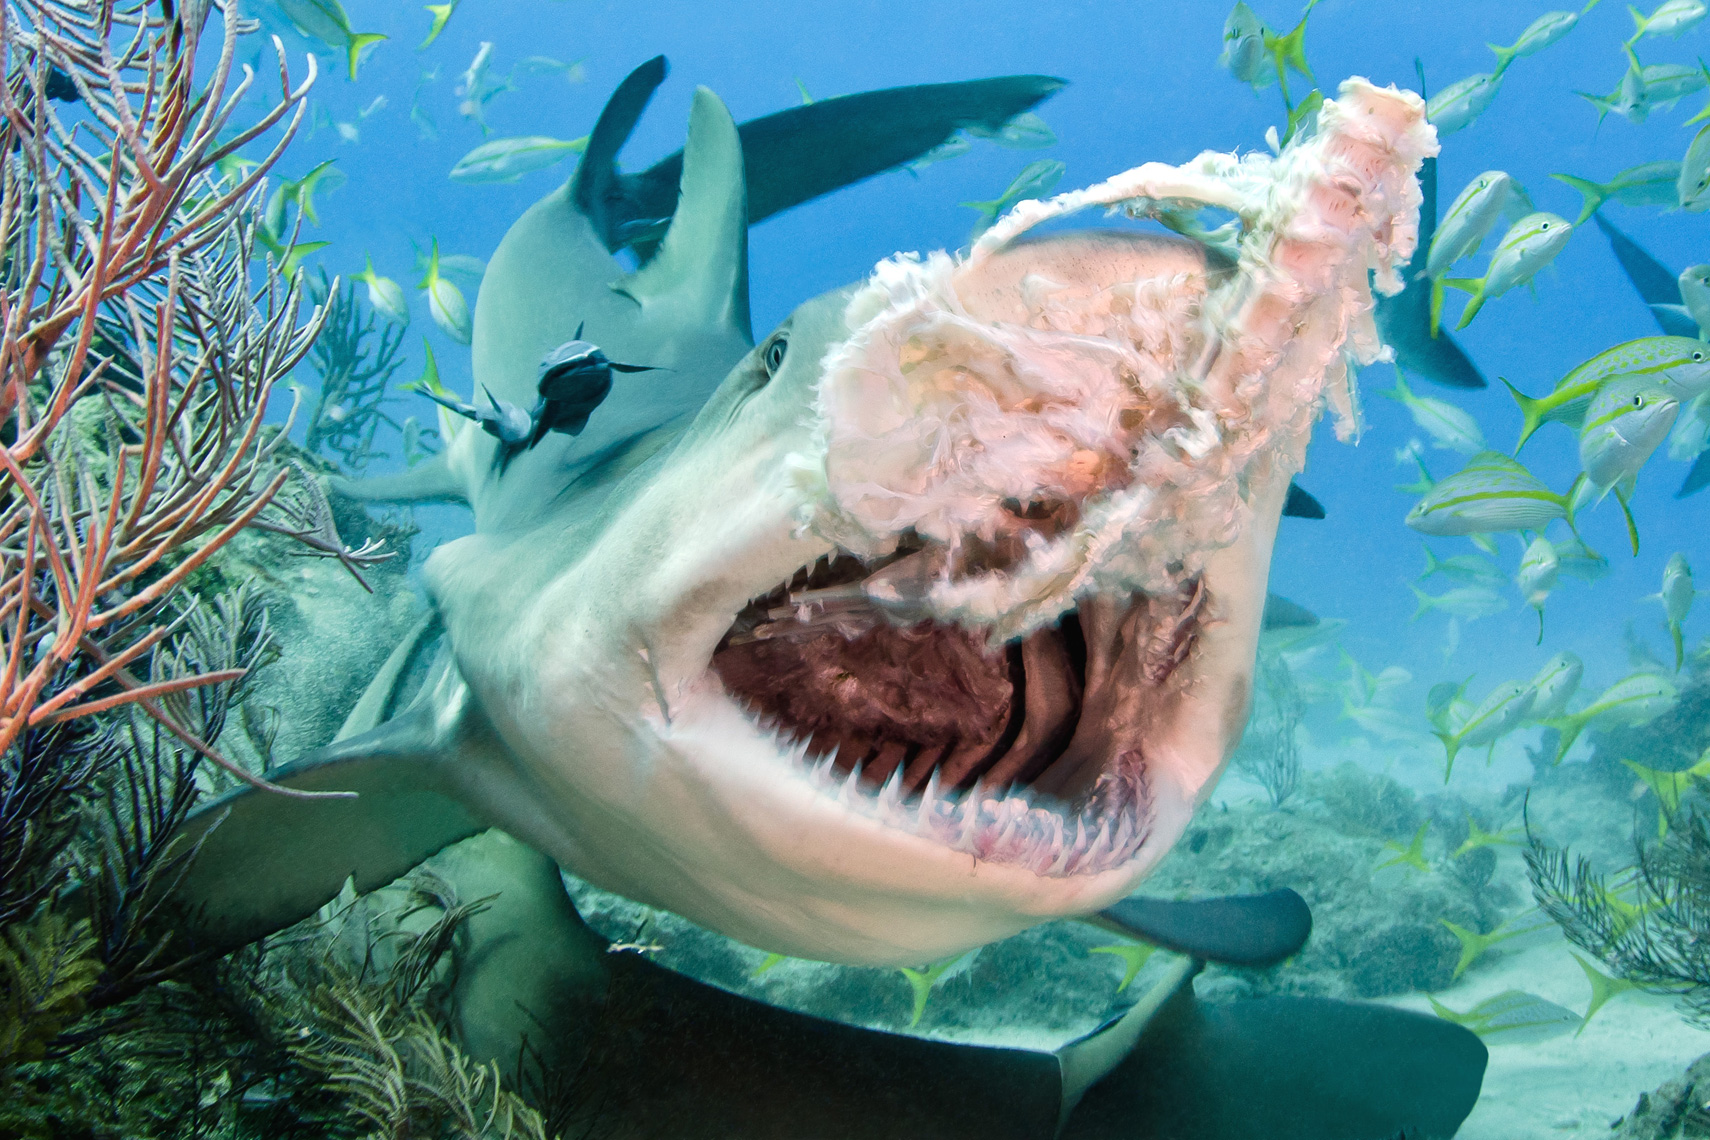 Tiger beach - lemon shark bait feeding